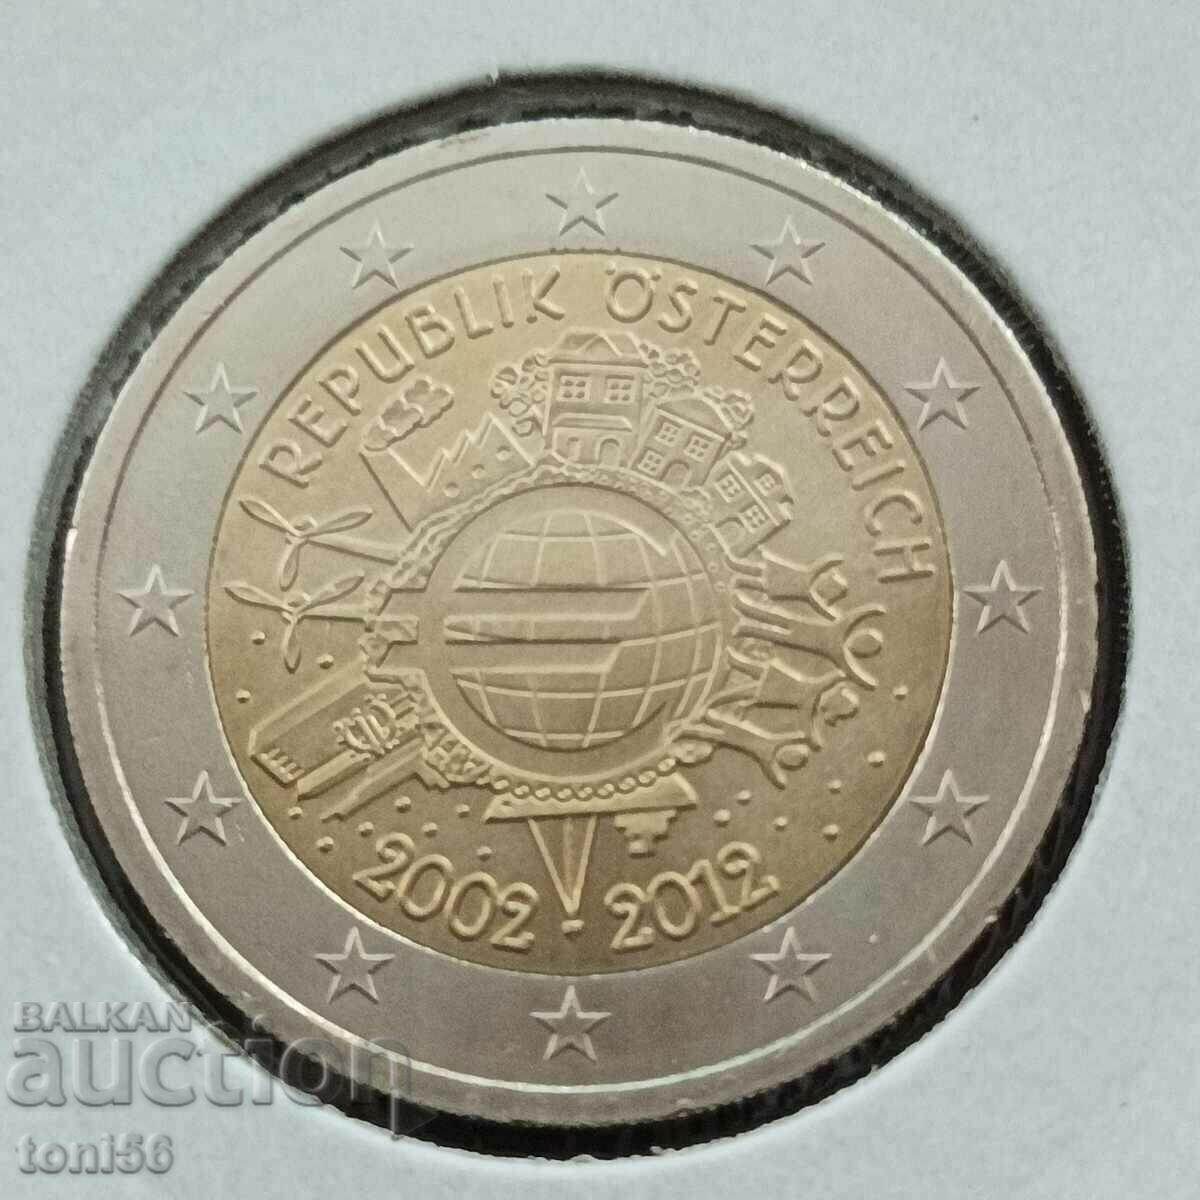 Αυστρία 2 ευρώ 2012 - 10 χρόνια "Κέρματα και τραπεζογραμμάτια ευρώ"